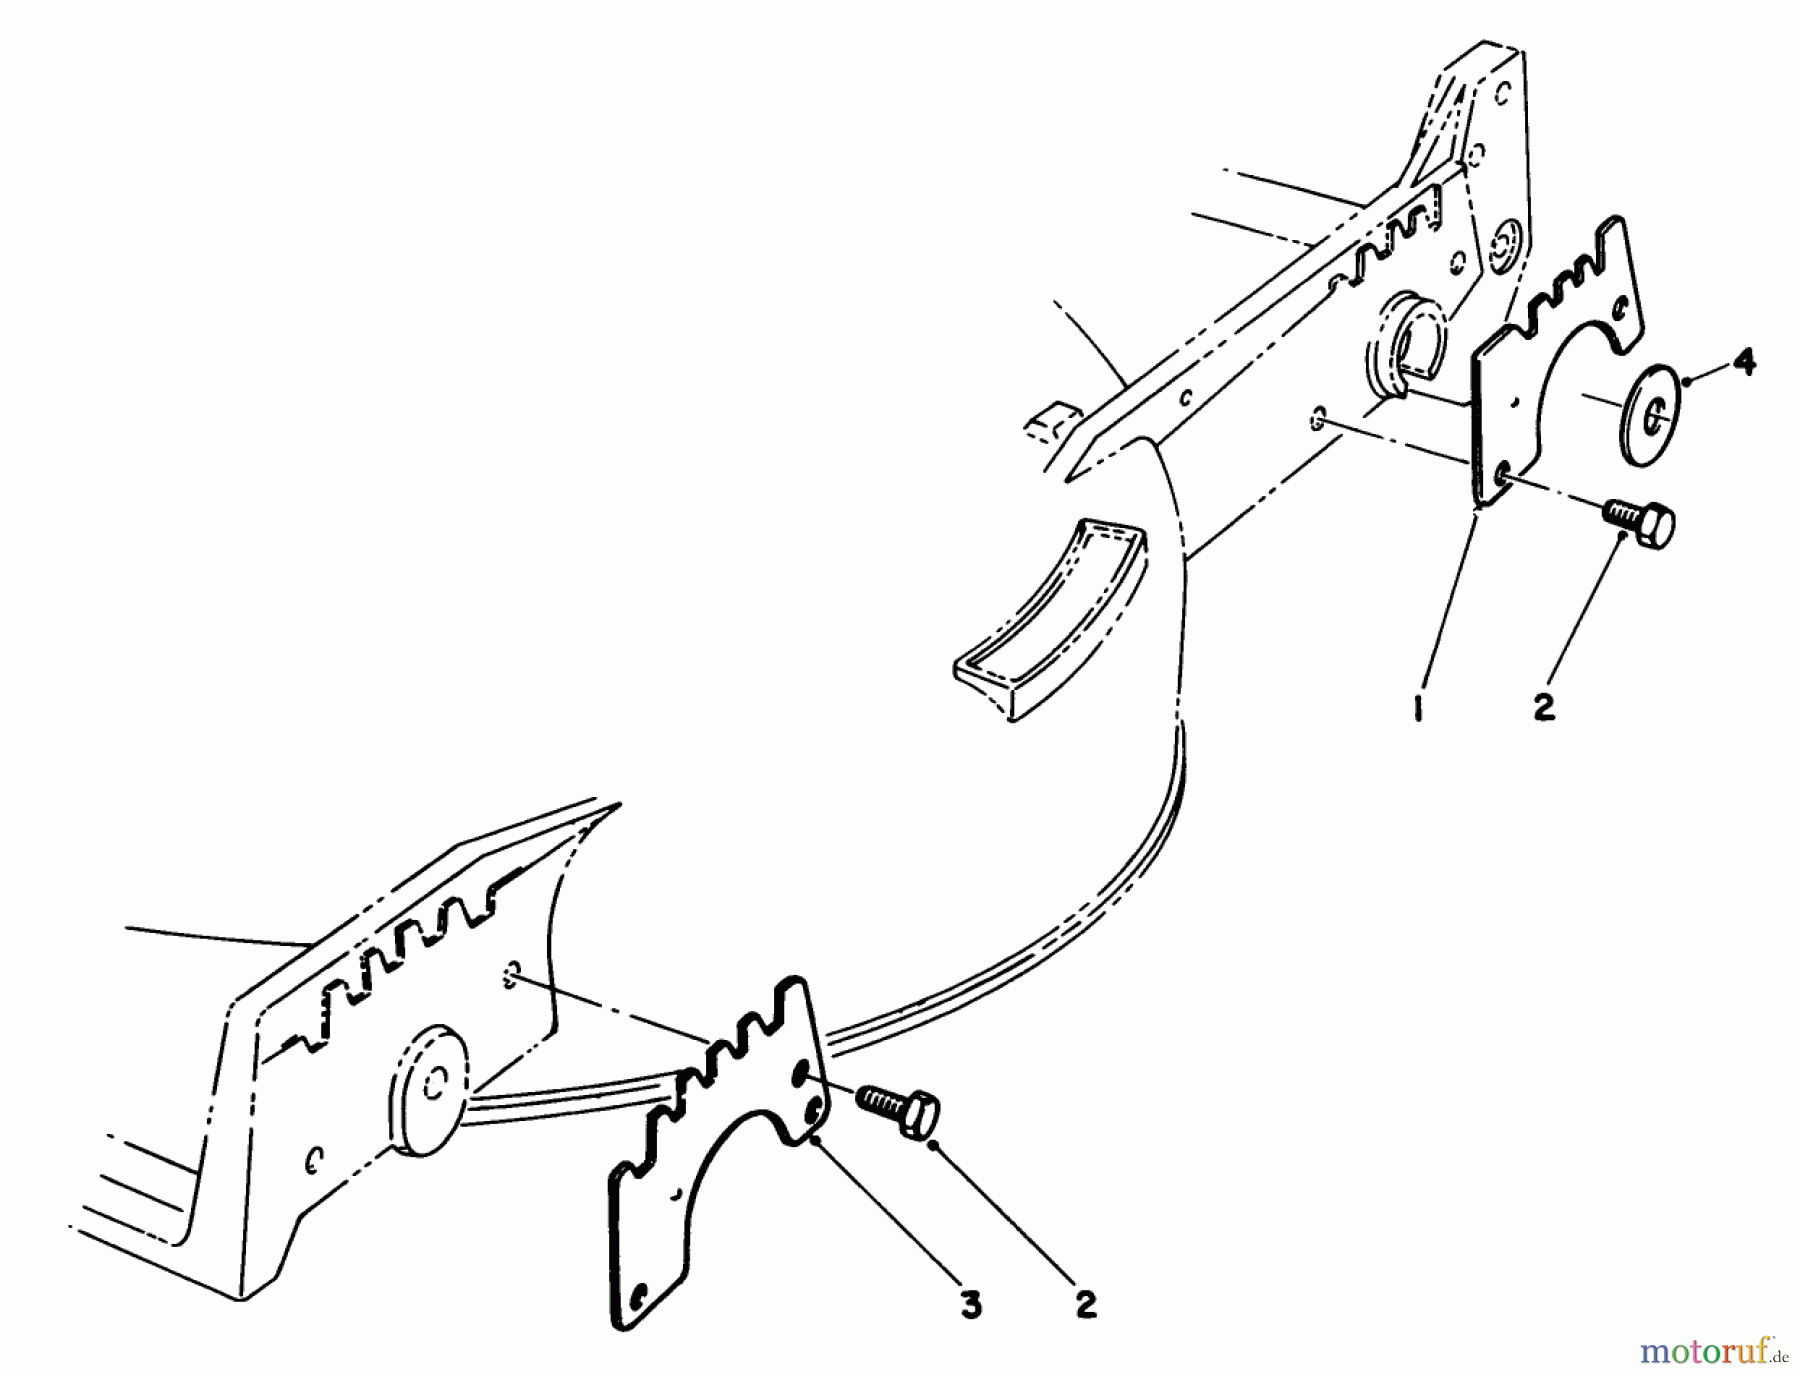  Toro Neu Mowers, Walk-Behind Seite 1 20588 - Toro Lawnmower, 1986 (6000001-6999999) WEAR PLATE KIT NO. 49-4080 (OPTIONAL)